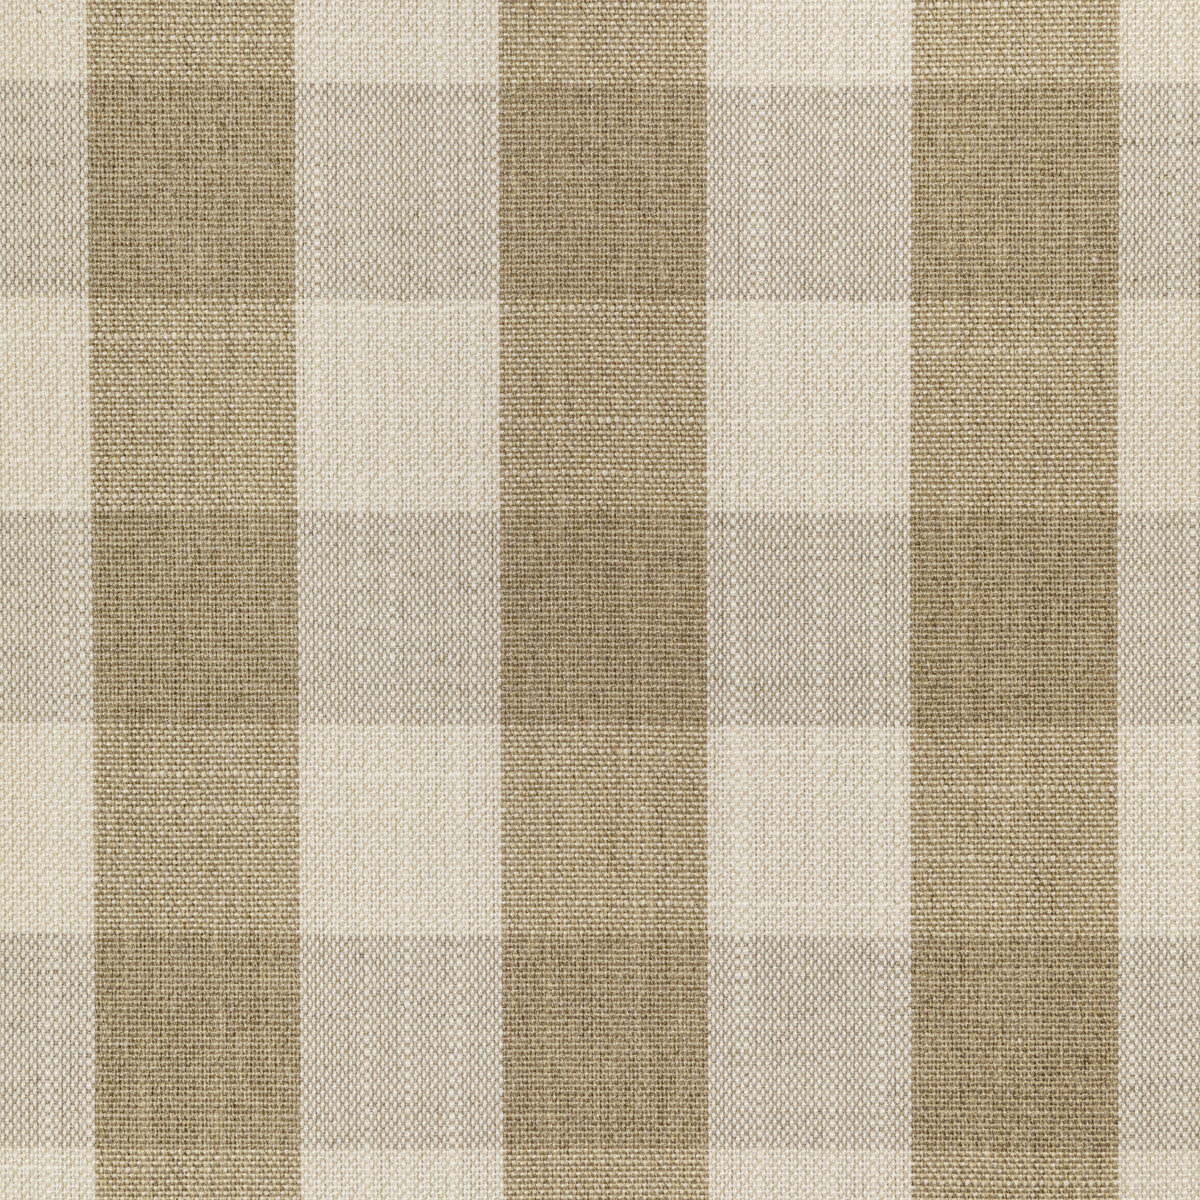 Kravet Basics fabric in 36563-161 color - pattern 36563.161.0 - by Kravet Basics